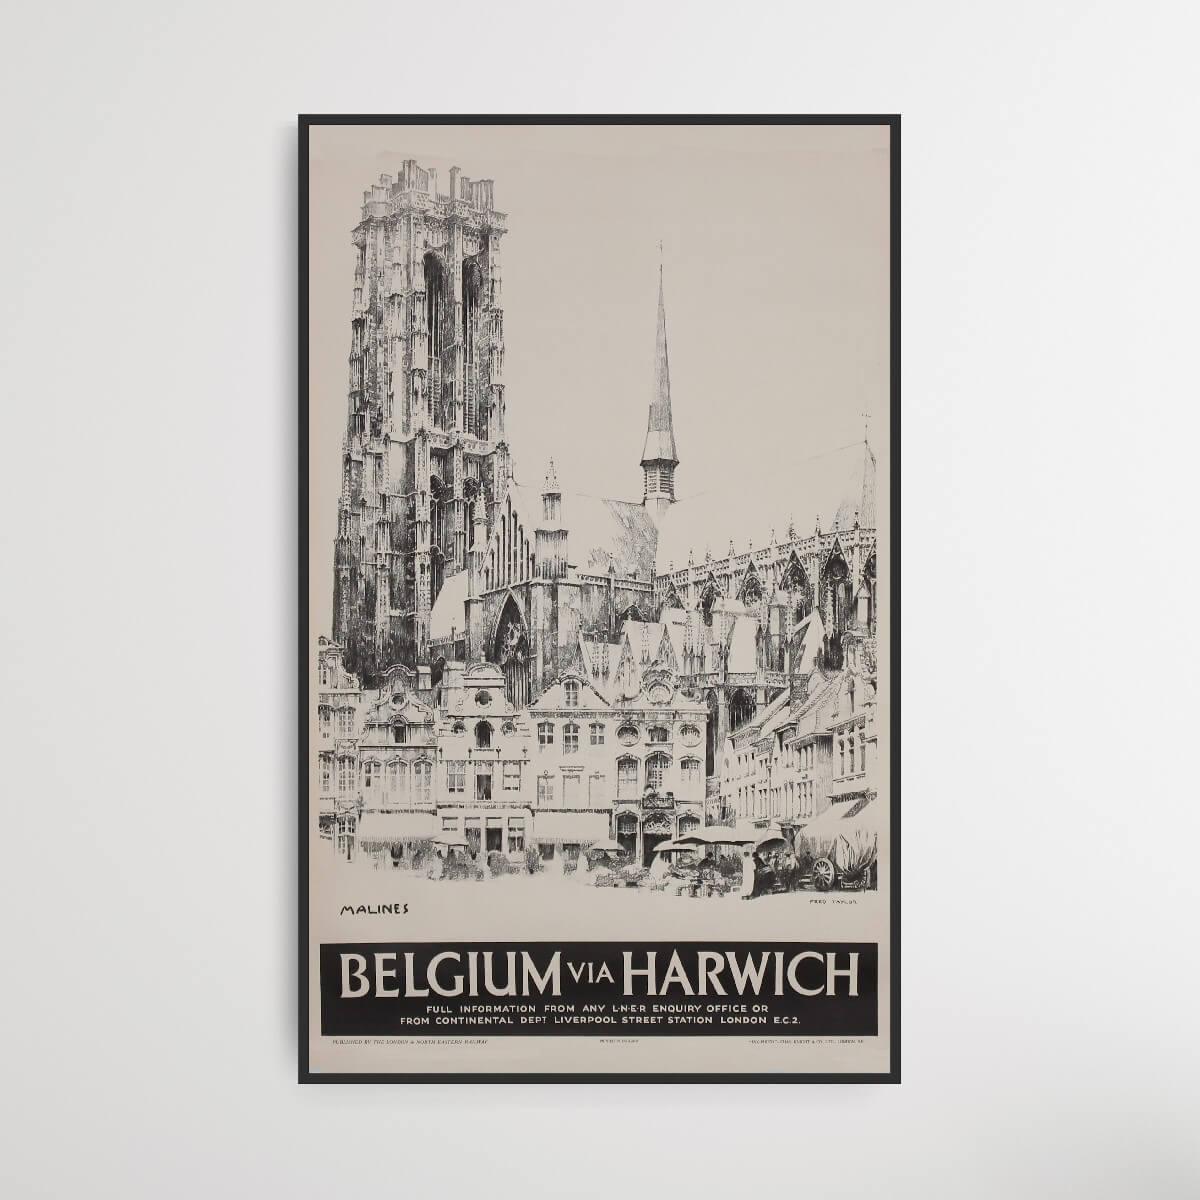 belgium-via-harwich-poster